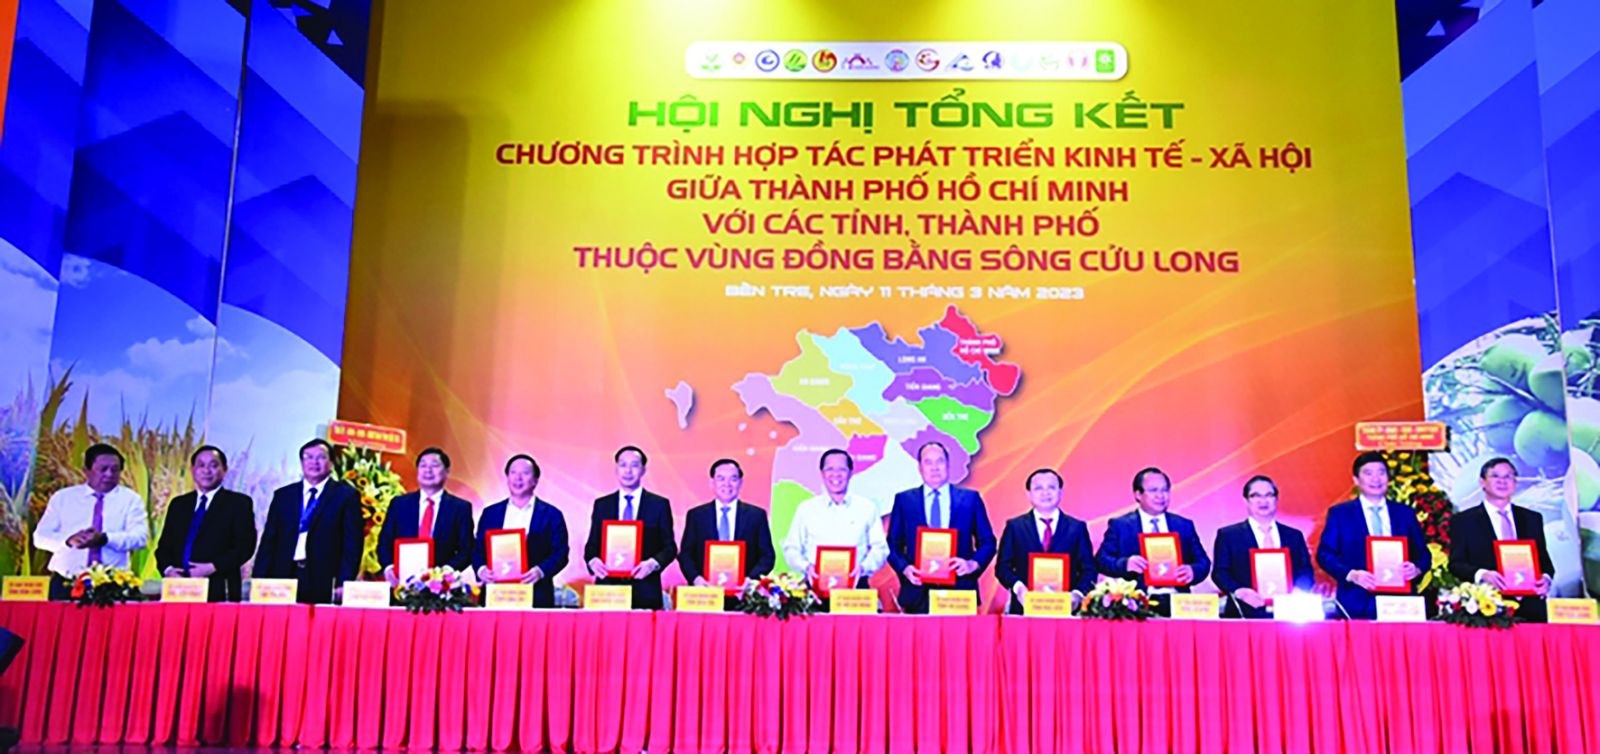 Tiền Giang- “siêu vệ tinh” của TP. Hồ Chí Minh